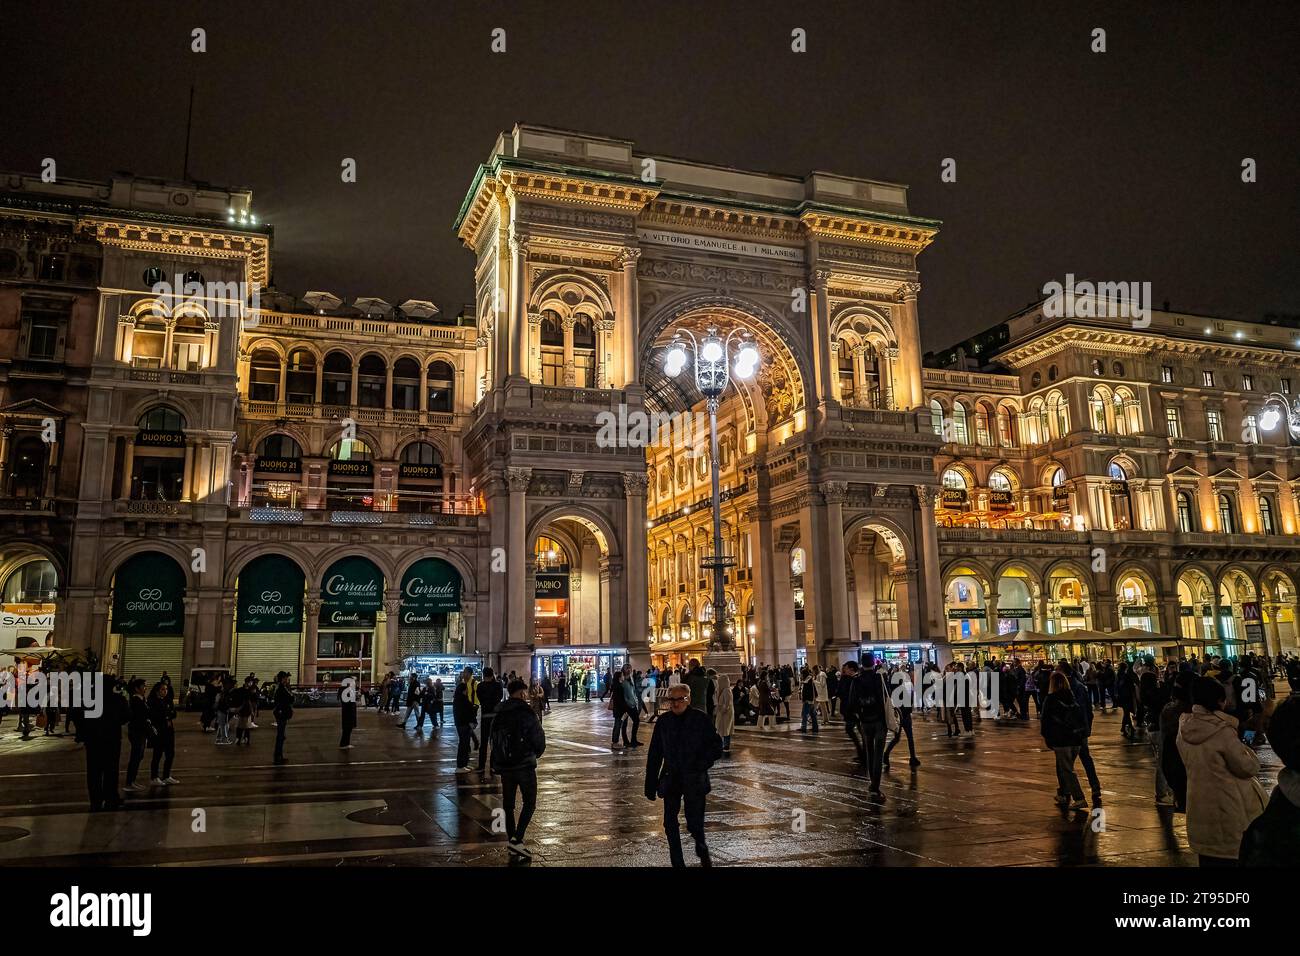 Galleria Vittorio Emanuele II in  all its splendor Stock Photo